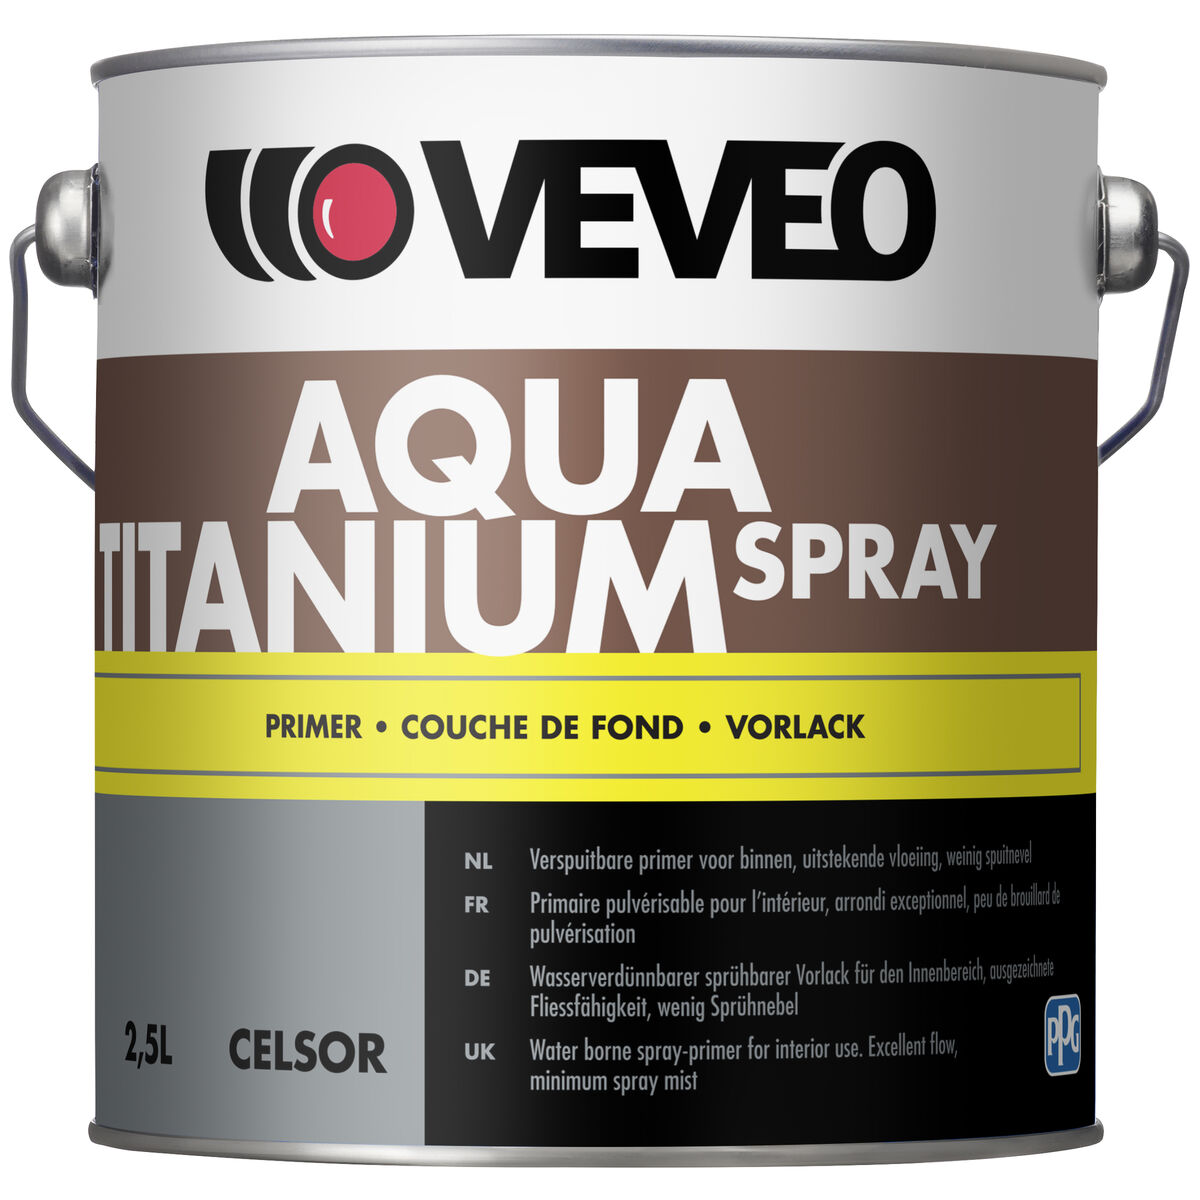 Celsor Aqua Titanium Spray Primer